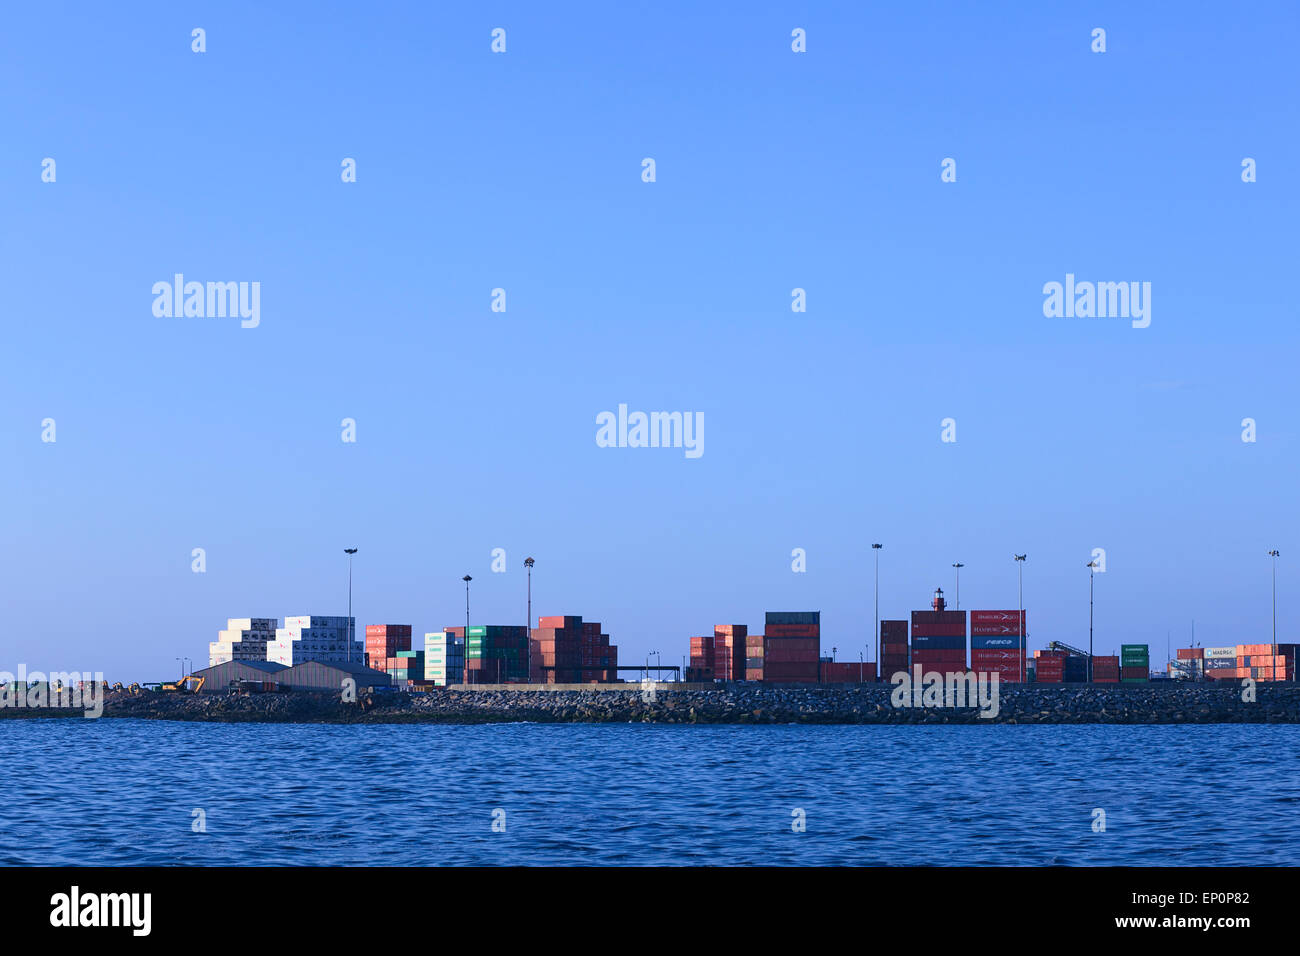 Viele Container gestapelt in den Hafen von Iquique, Chile. Iquique ist eine freie Hafenstadt im Norden Chiles. Stockfoto